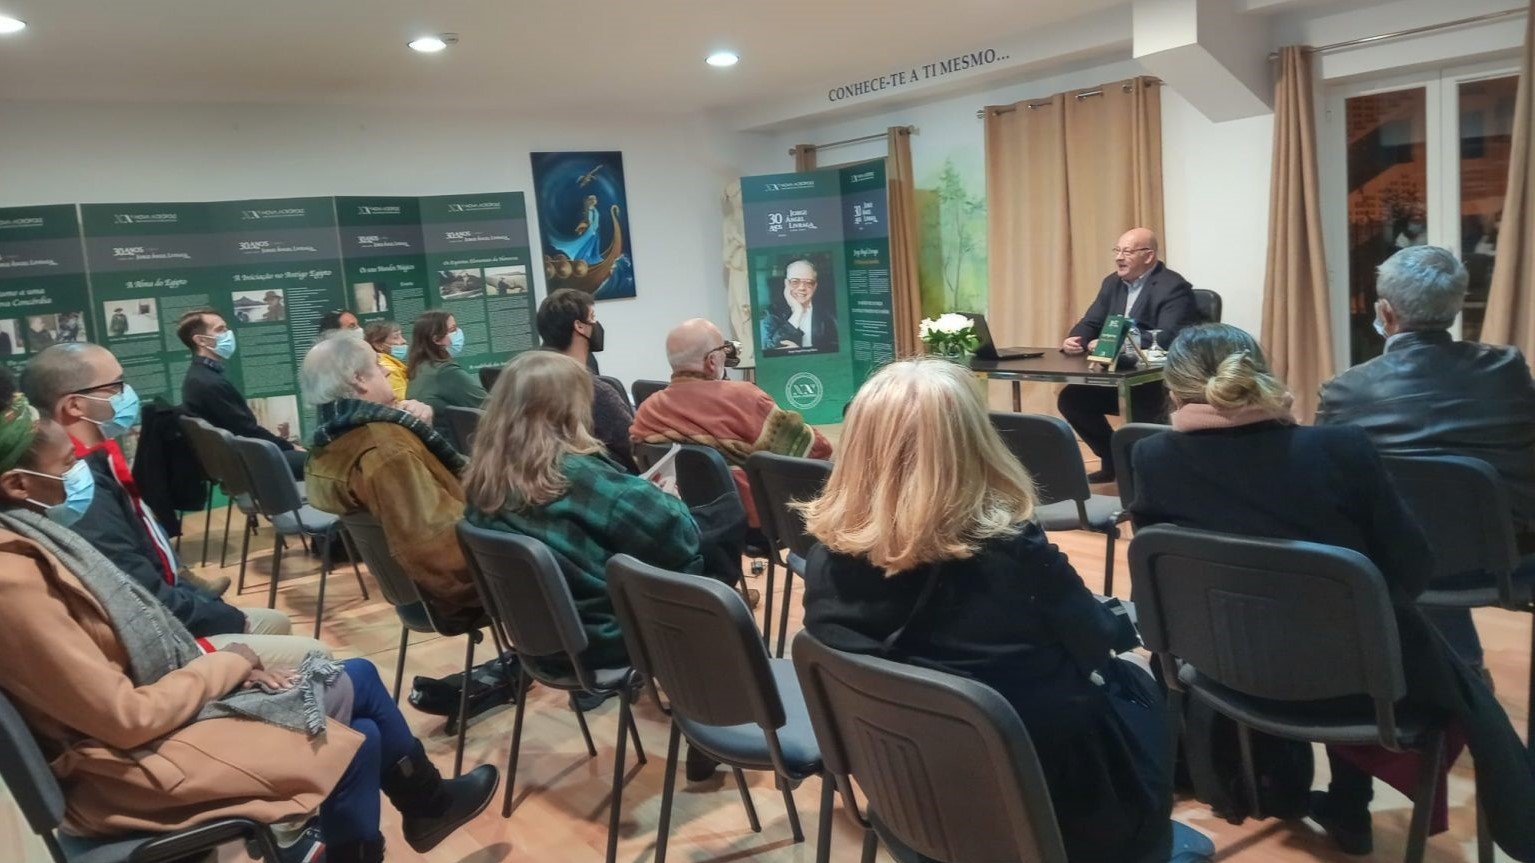 Ausstellung und Konferenz: "Jorge Ángel Livraga, der Philosoph des Herzensmutes" (Lissabon, Portugal)